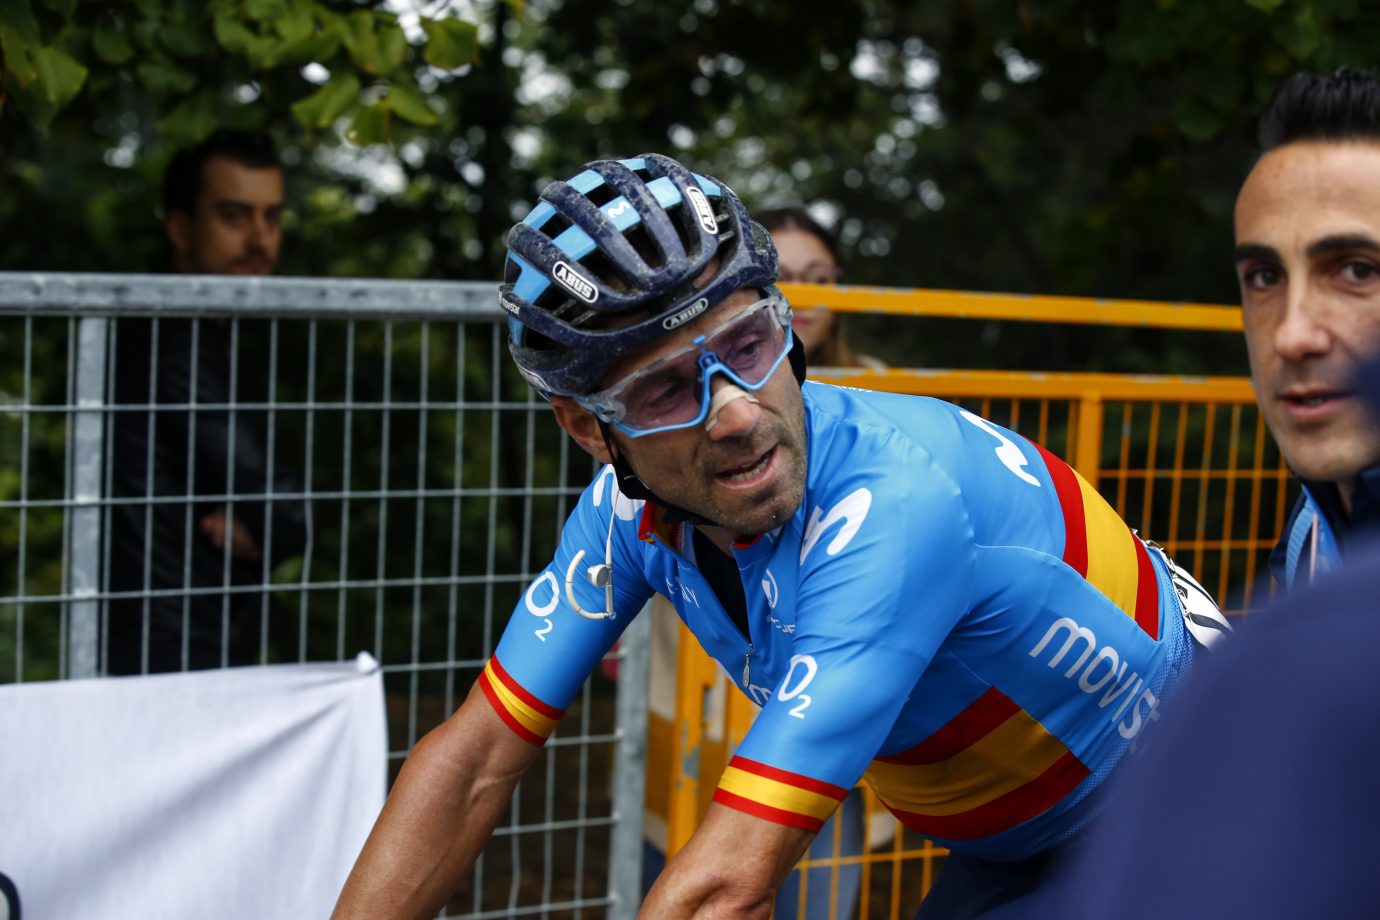 Il Lombardia 2019. Alejandro Valverde z nadzieją na jesienną glorię